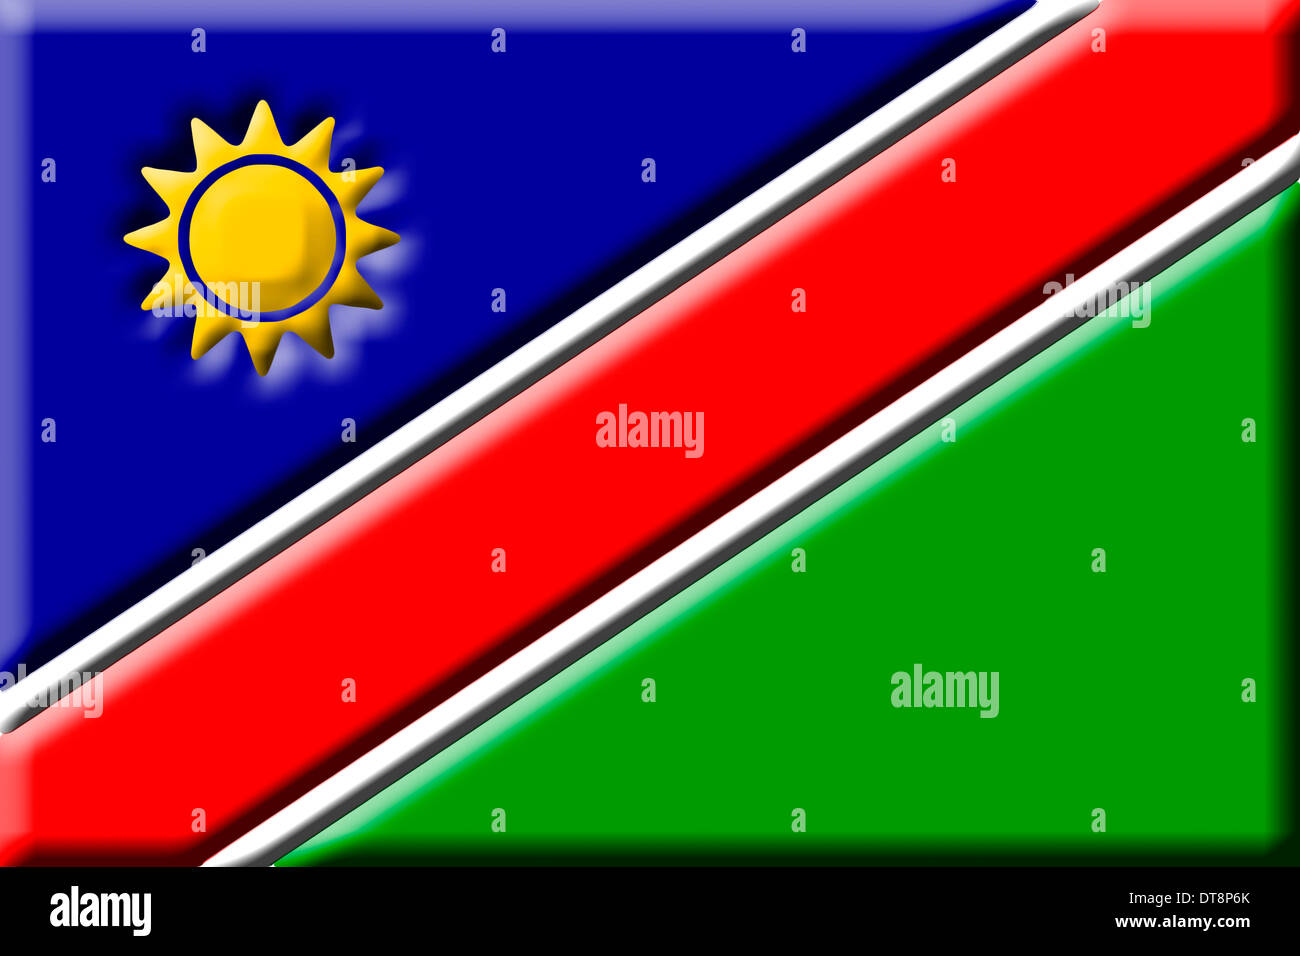 République de Namibie - drapeau national Banque D'Images